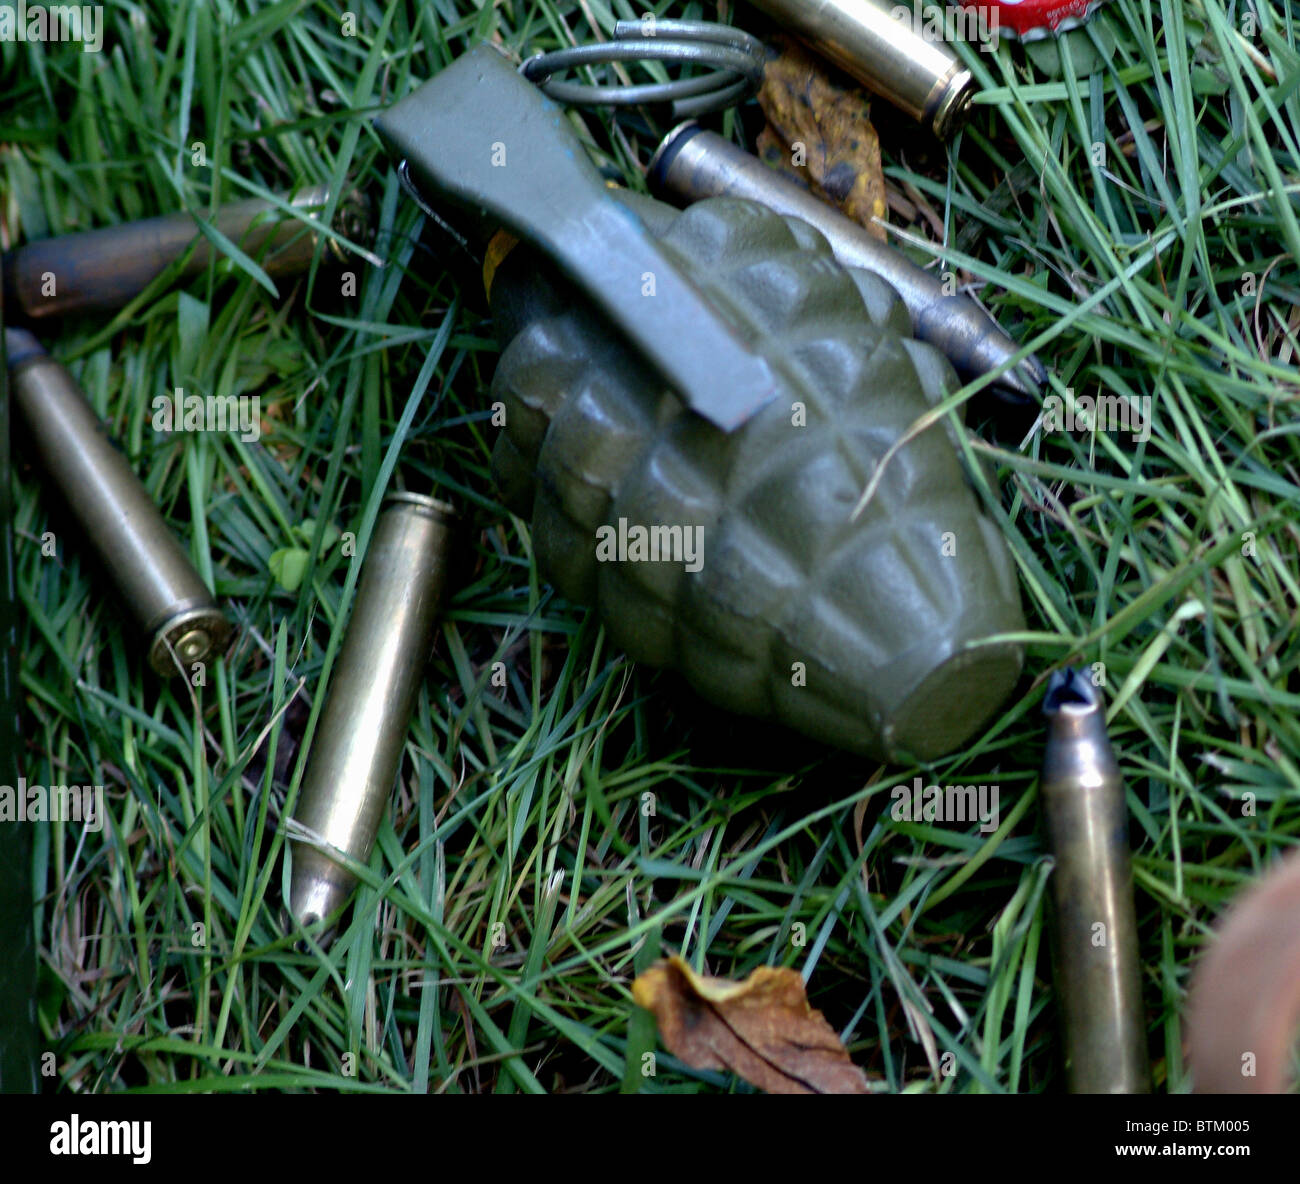 hand grenade sitting amongst spent bullets Stock Photo